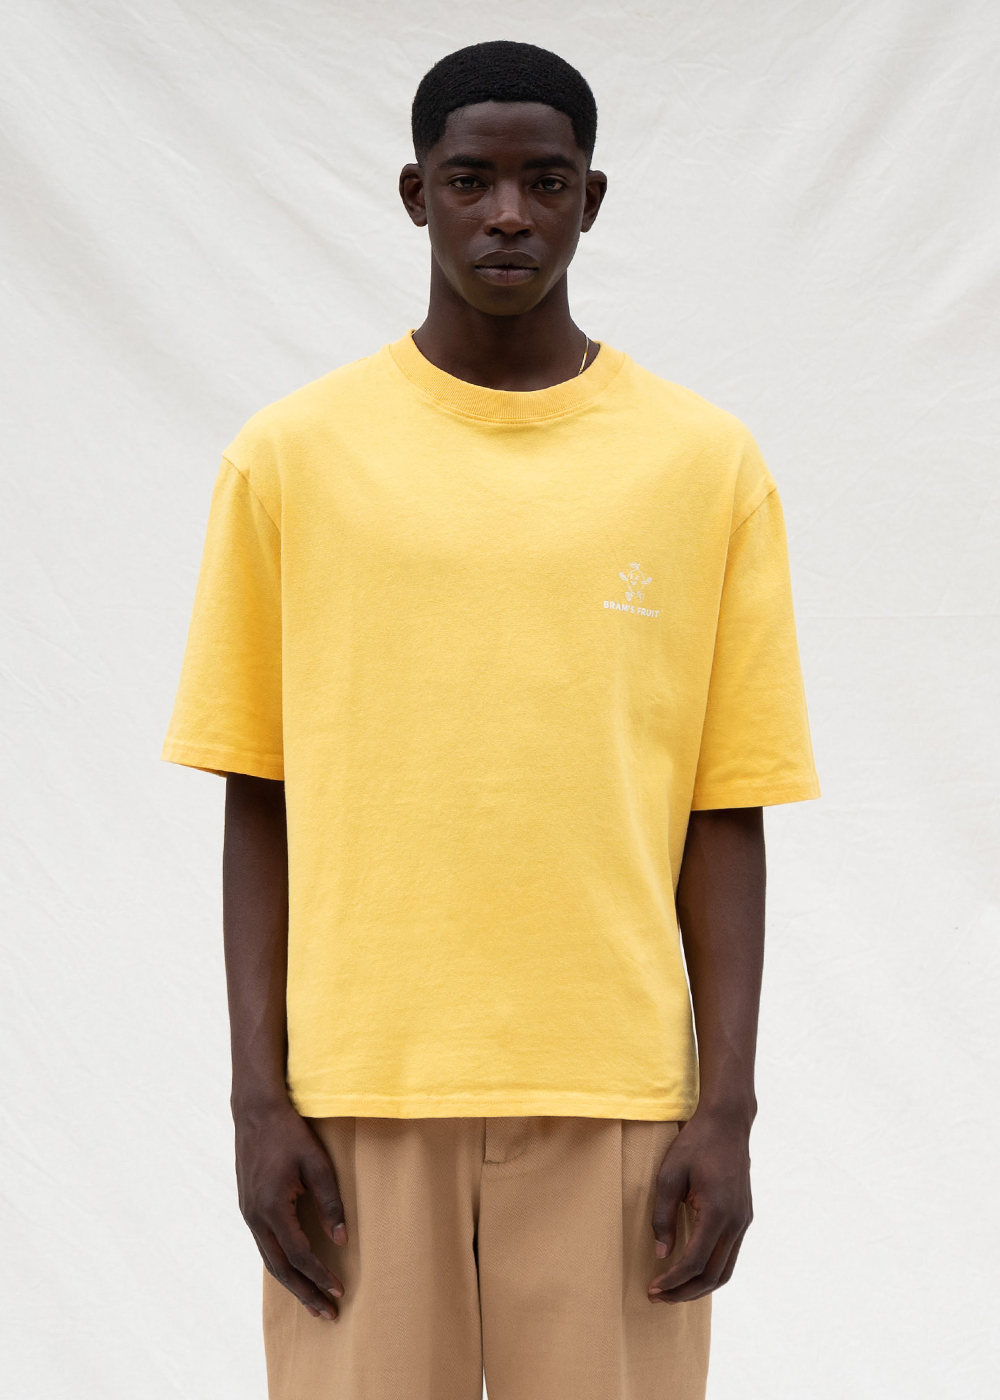 Yellow t-shirt - Yellow